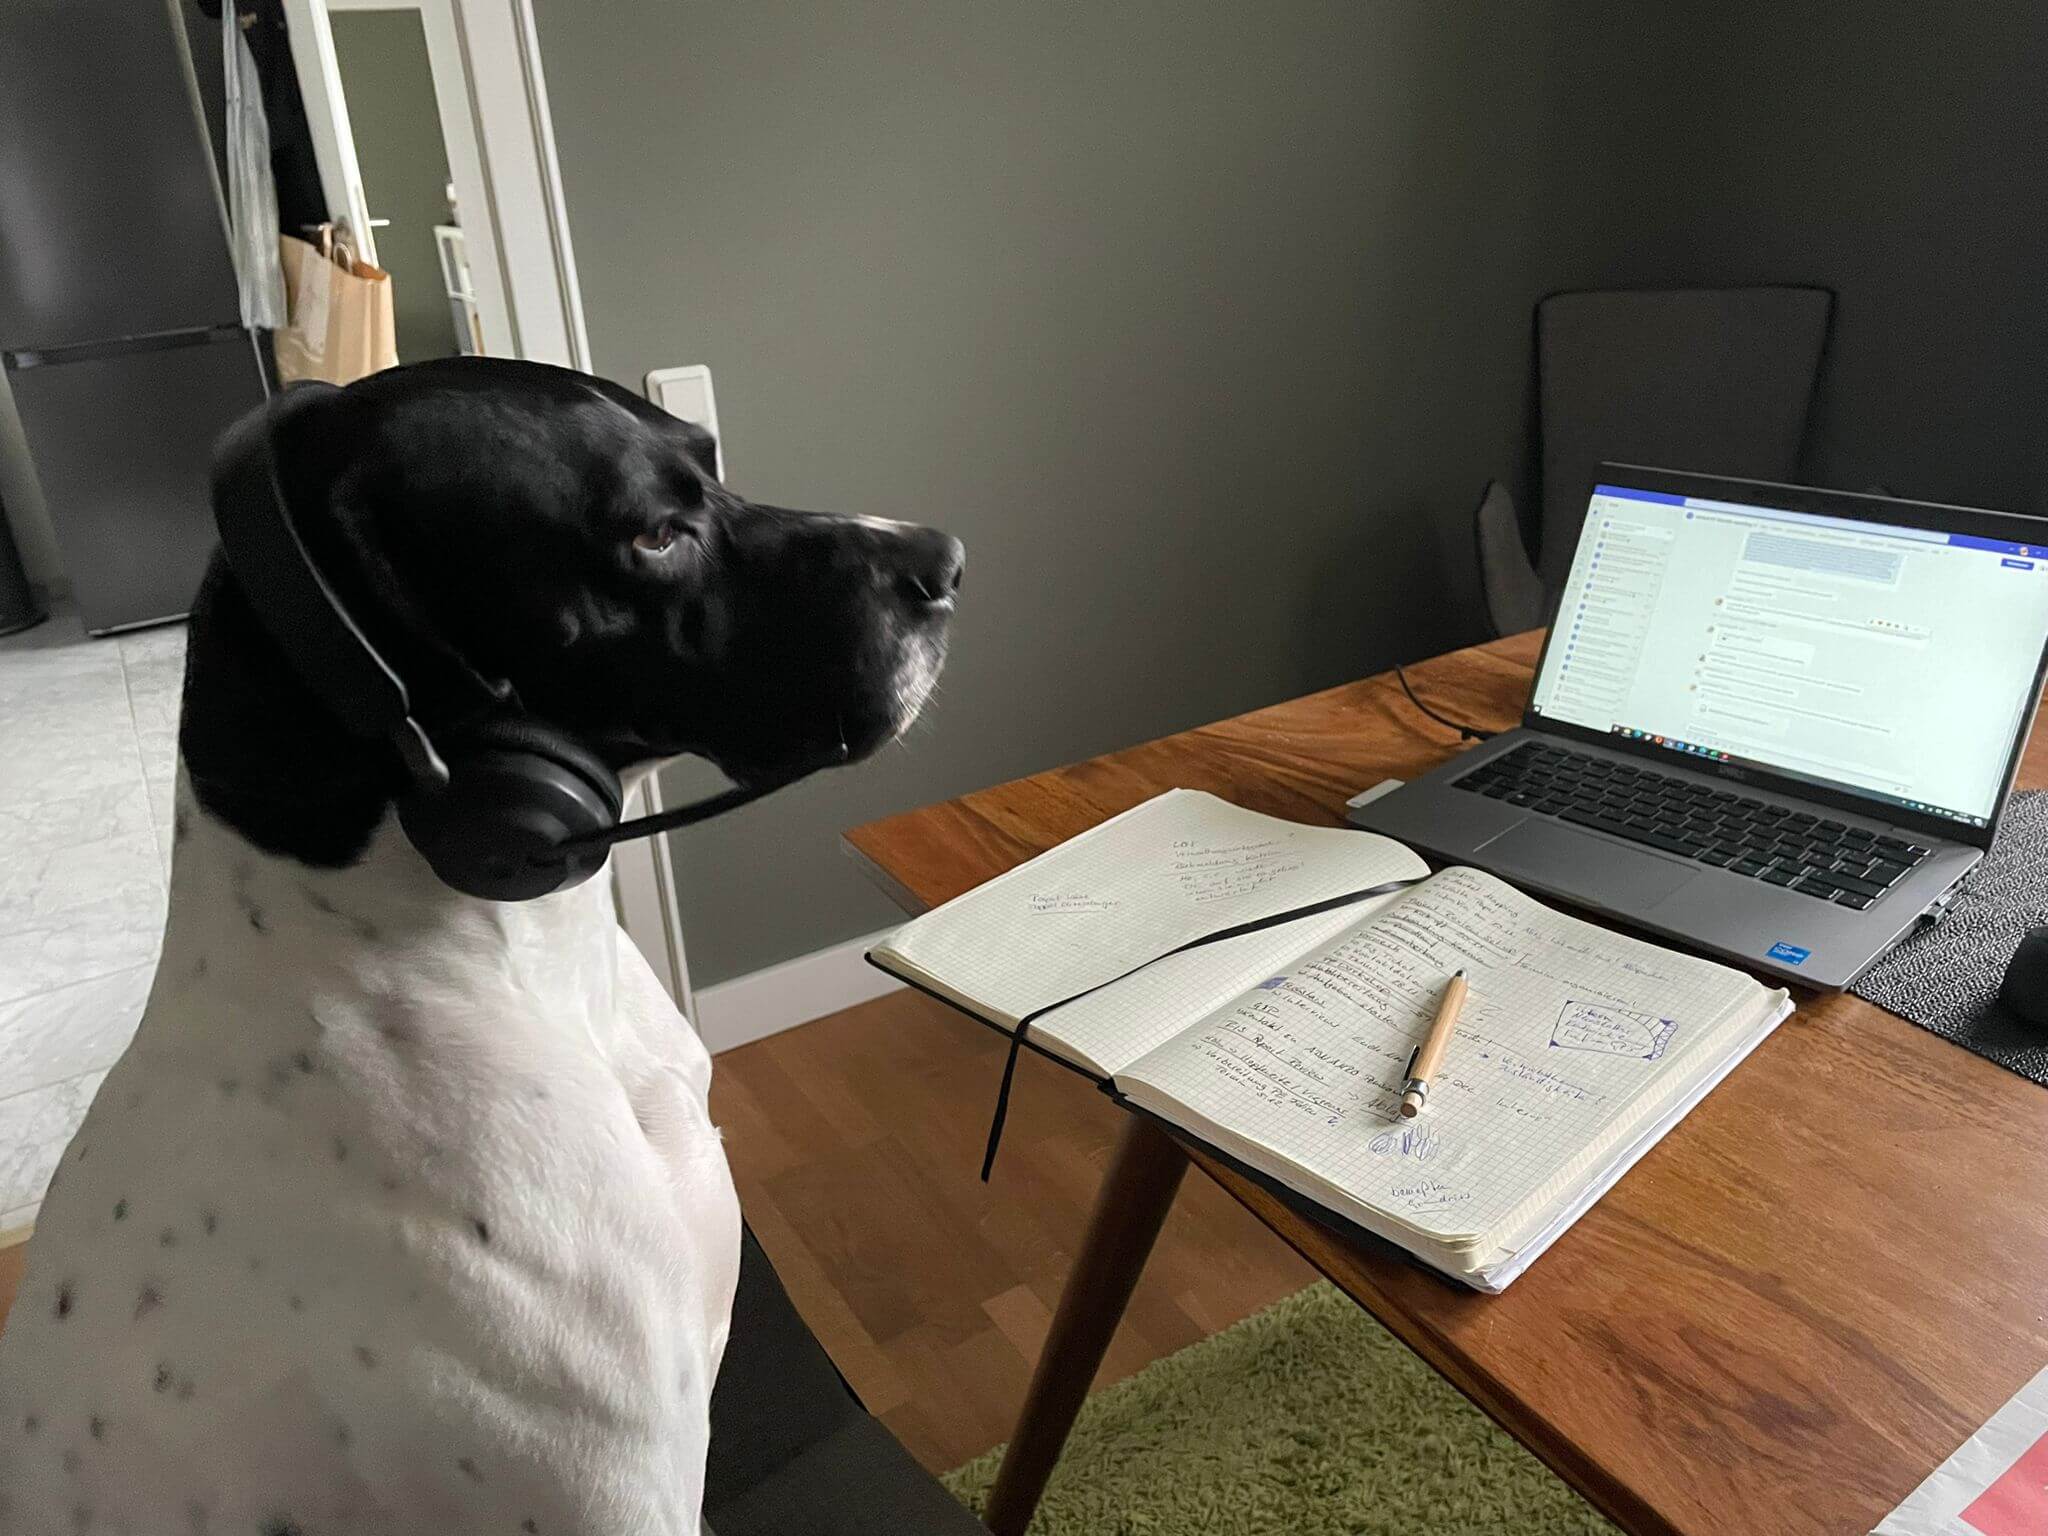 Foto divertente di un cane dietro al computer, con le cuffie e il microfono che sembra che stia lavorando al computer